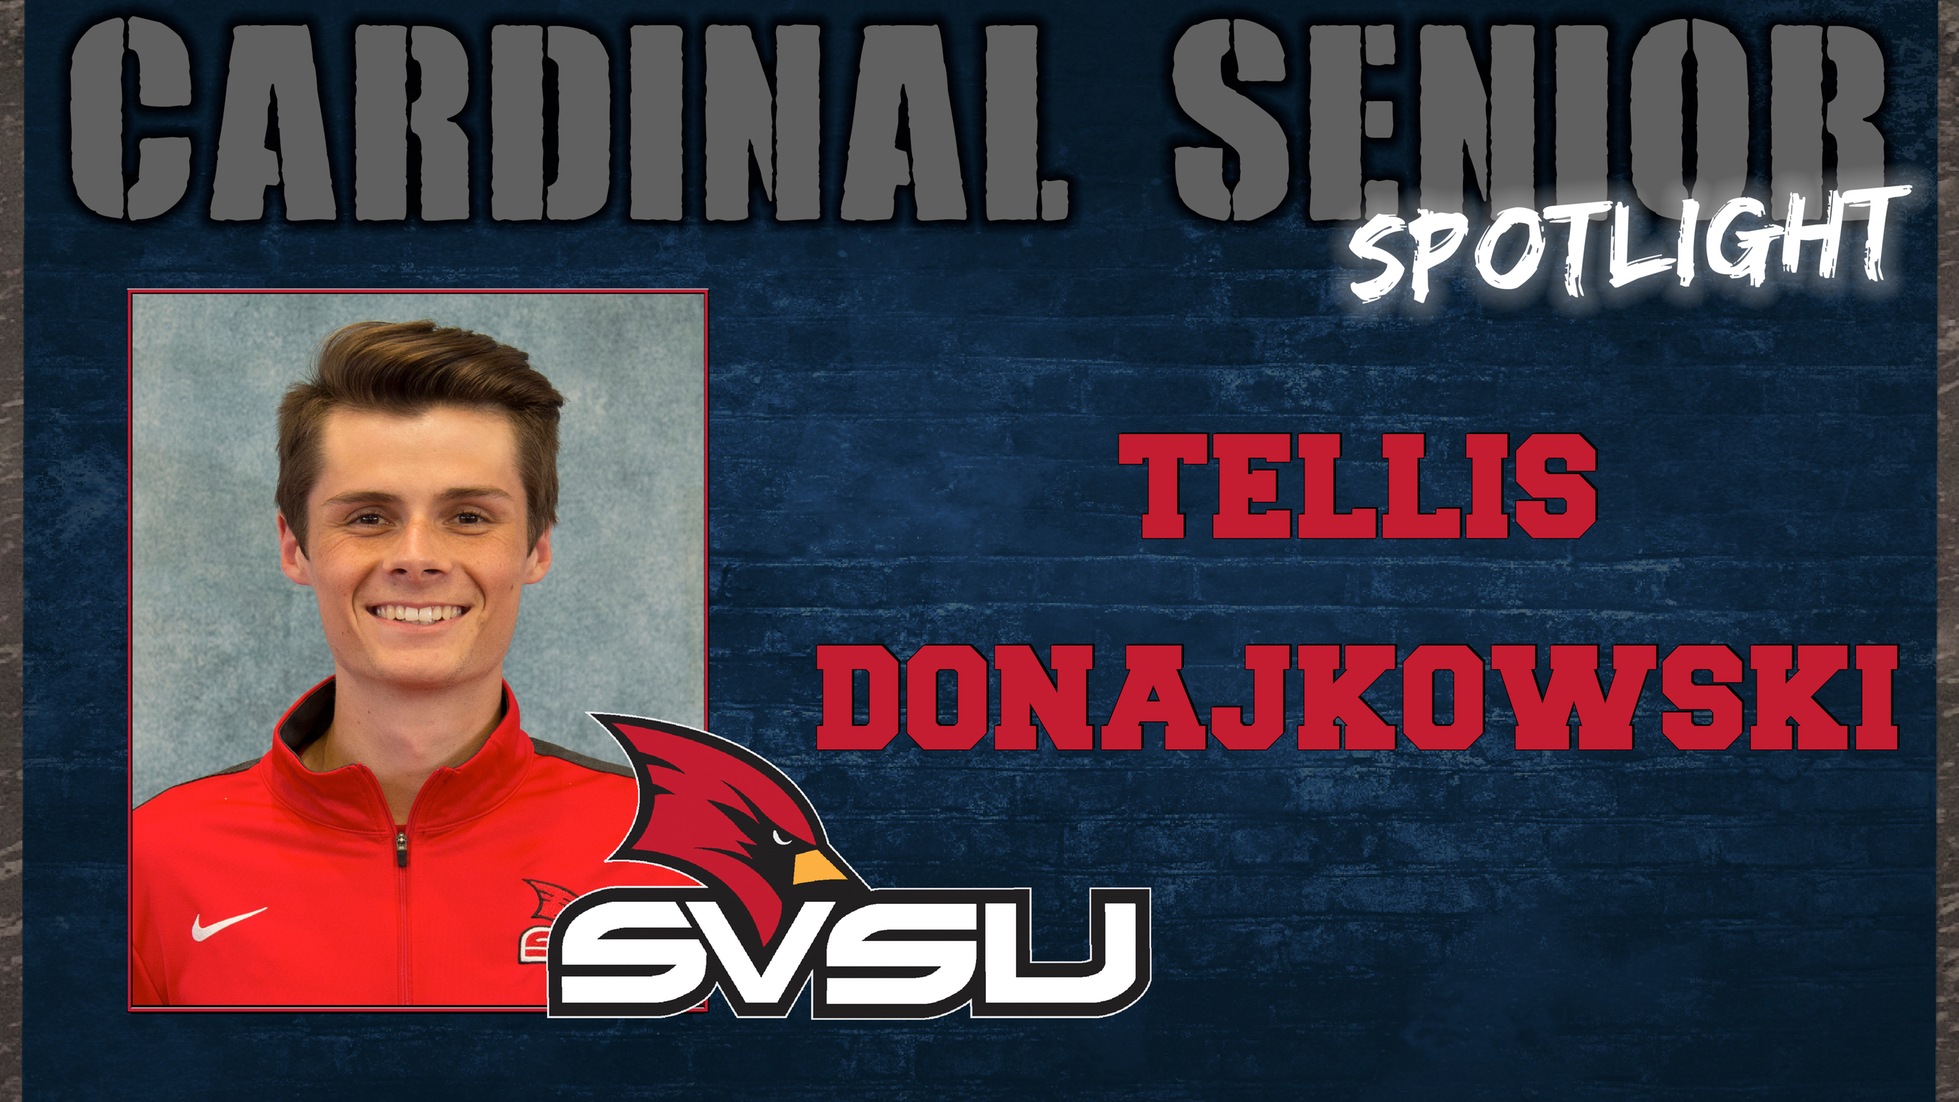 SVSU Cardinal Senior Spotlight - Tellis Donajkowski